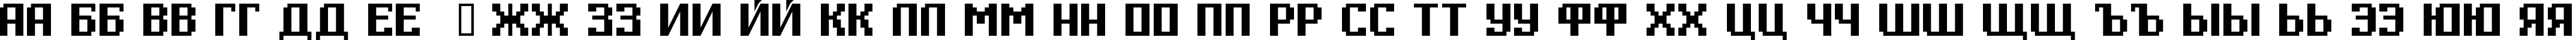 Пример написания русского алфавита шрифтом Digital Thin